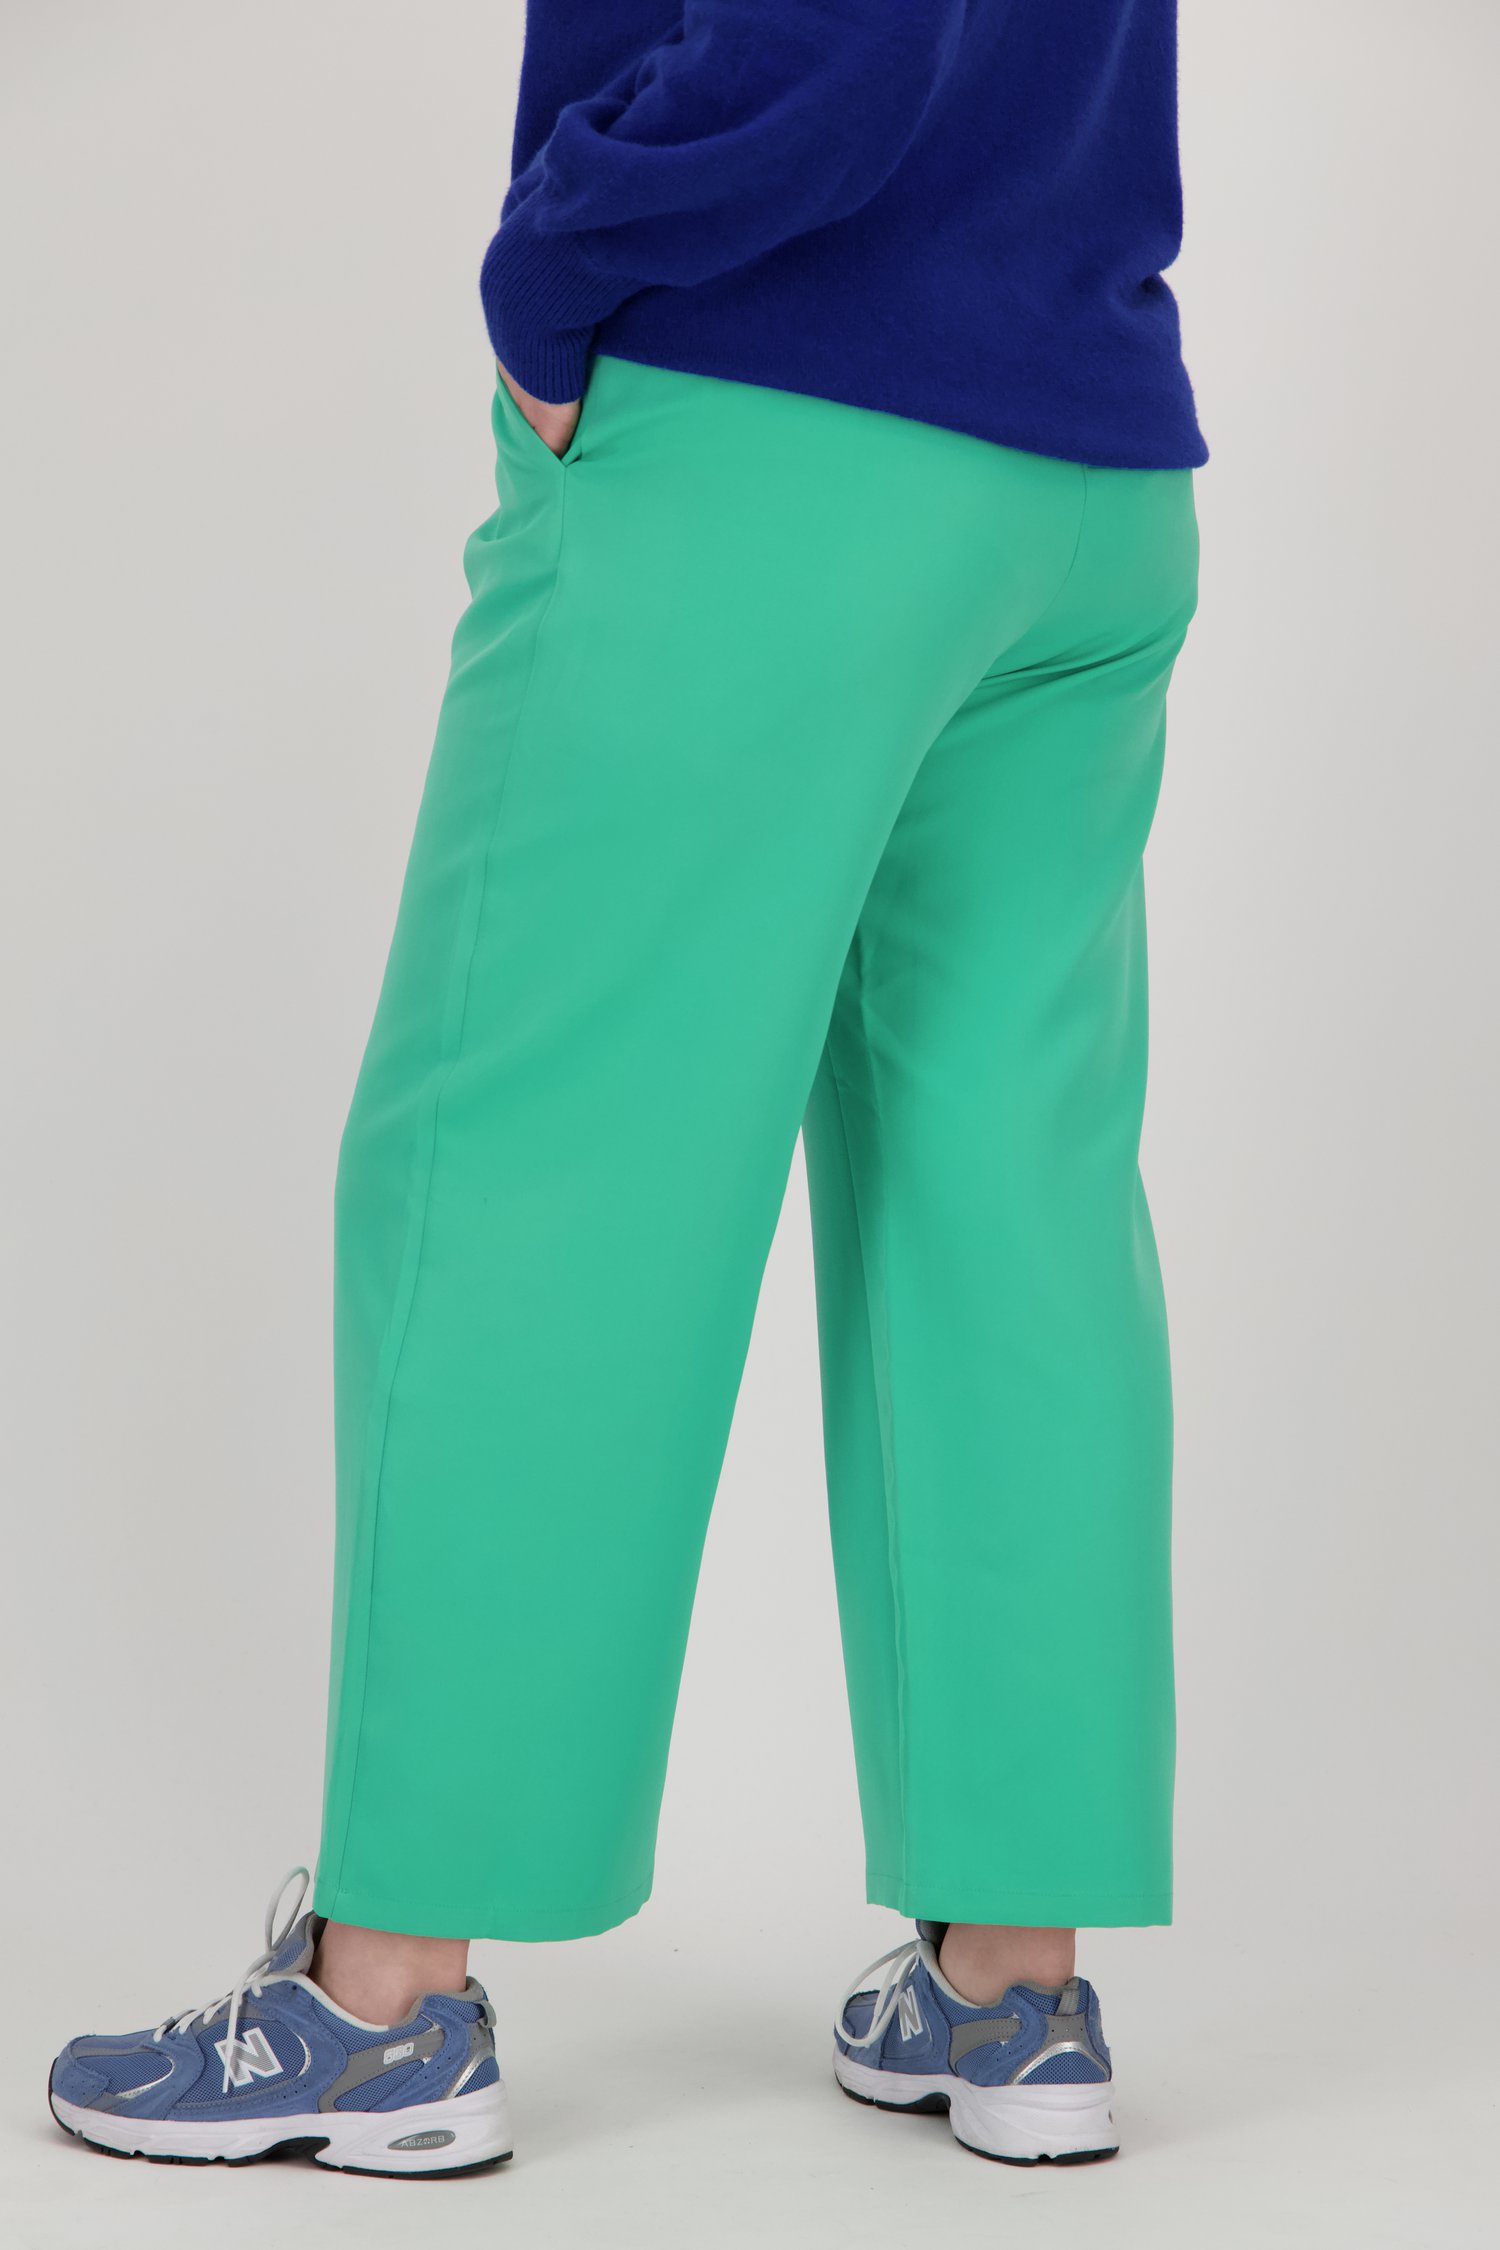 Pantalon large vert de Only Carmakoma pour Femmes